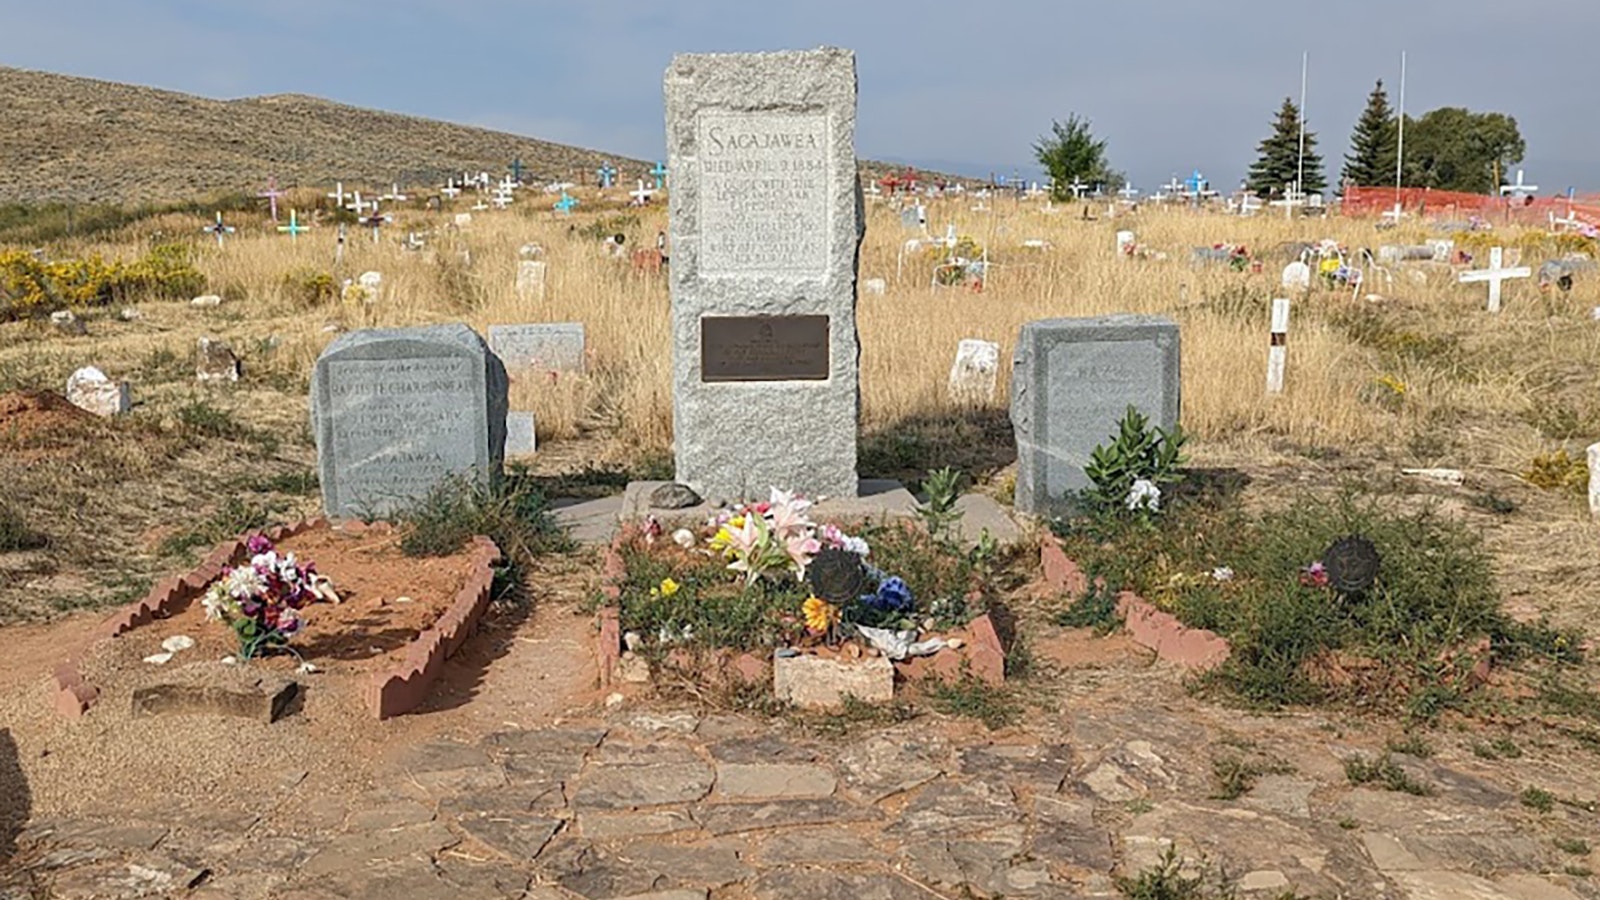 Sacajawea's grave at Fort Washakie, Wyoming.